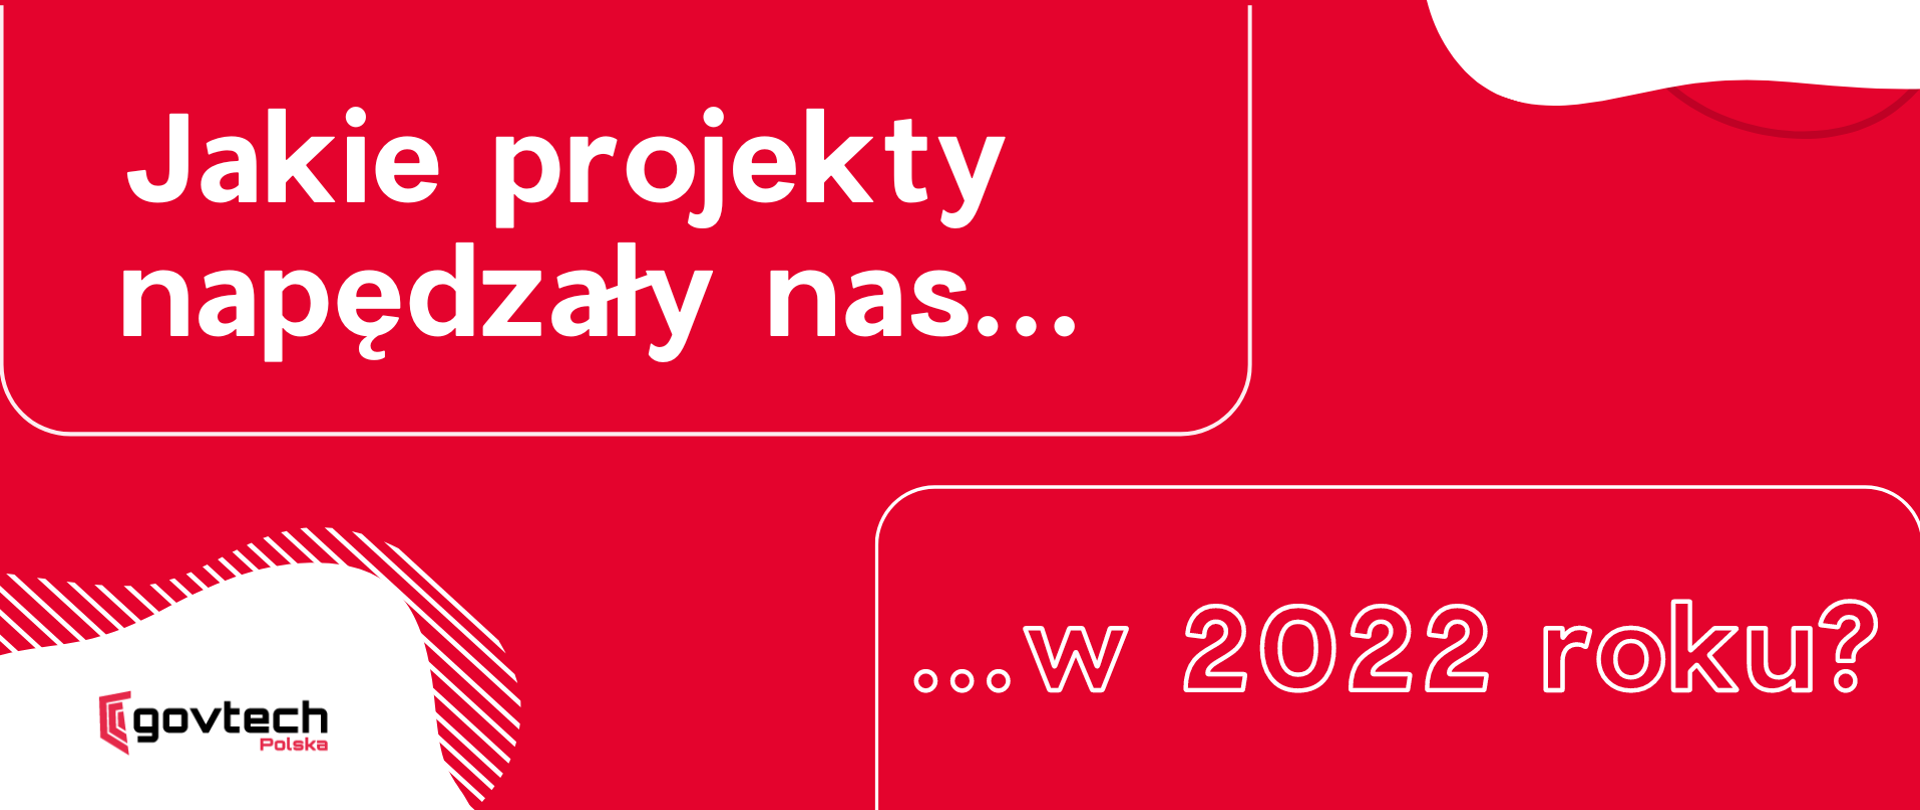 W lewym górnym rogu napis: Jakie projekty napędzały nas...
W prawym dolnym rogu napis: ... w 2022 roku?